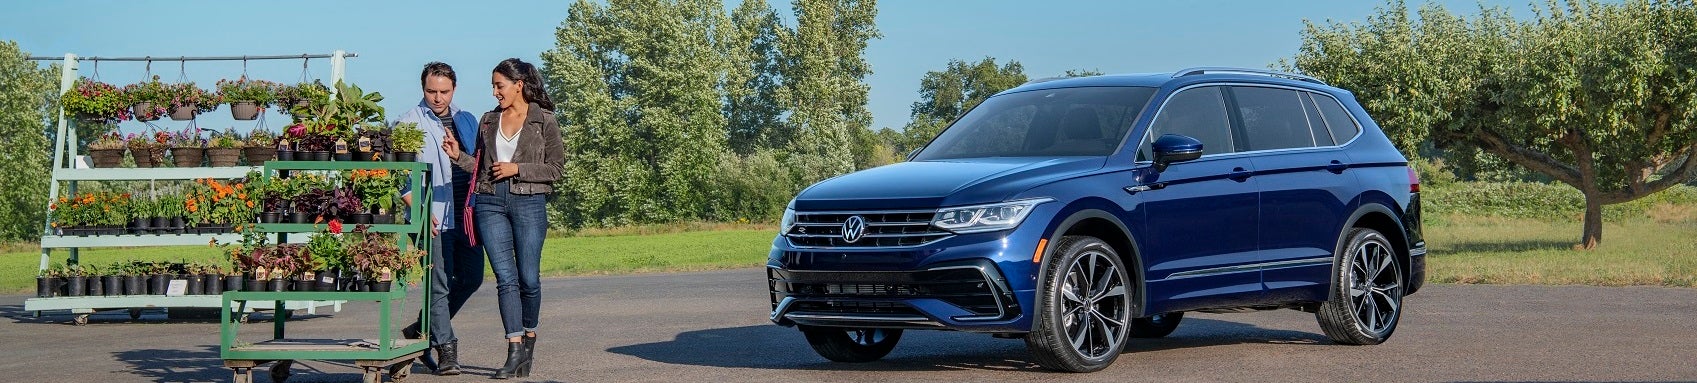 Volkswagen Lease Deals Avon IN